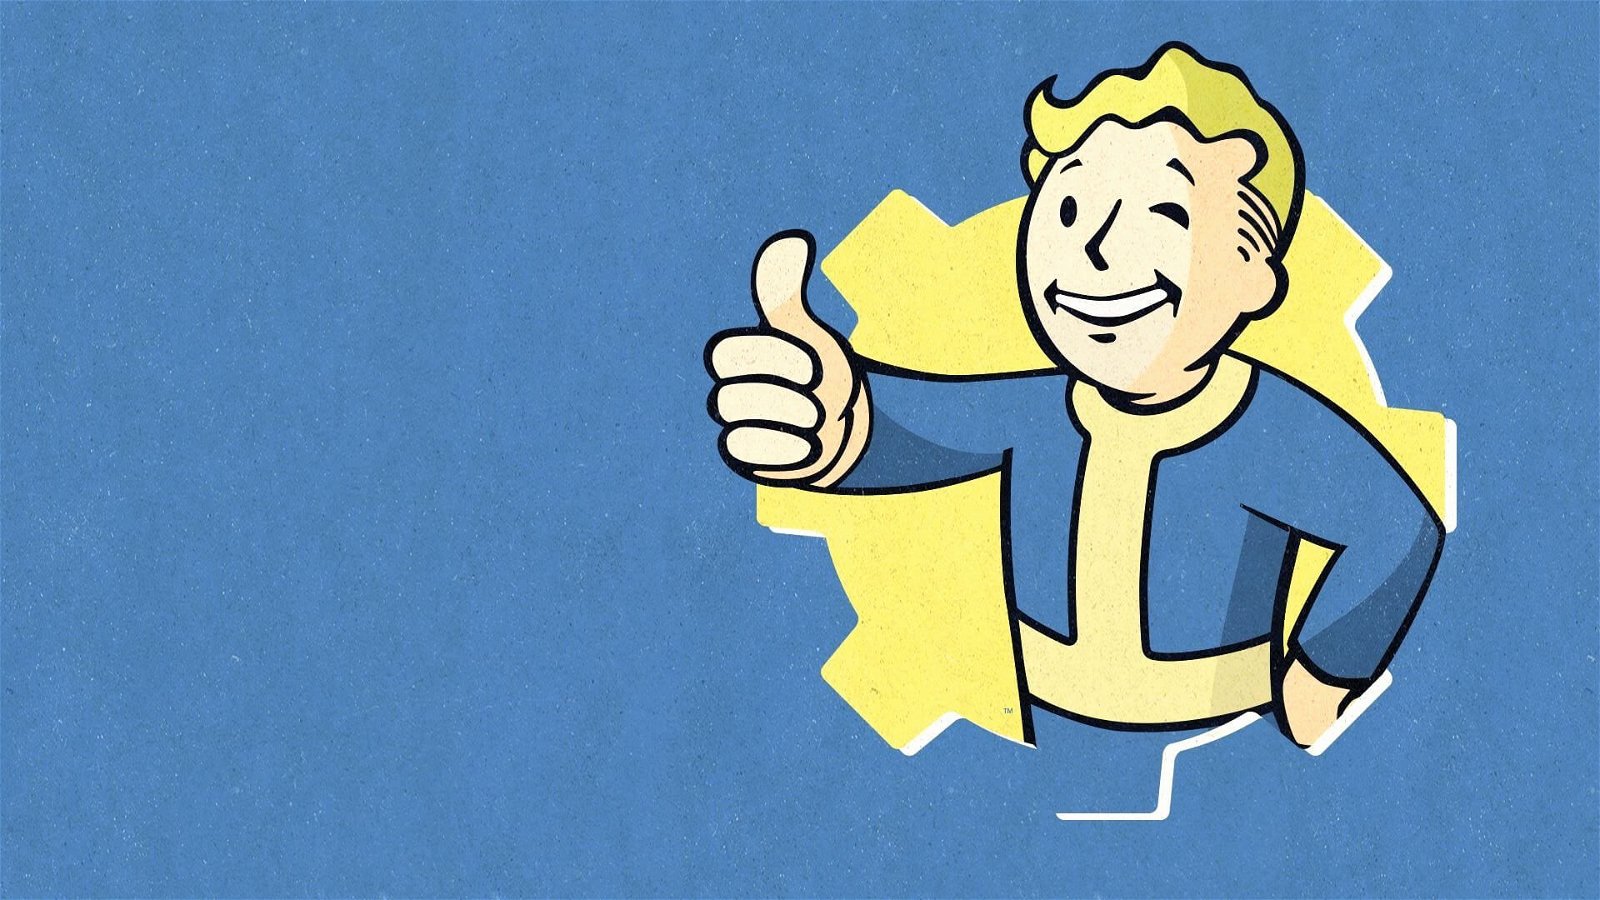 Fallout, i fan non hanno dimenticato l'immagine "maledetta"